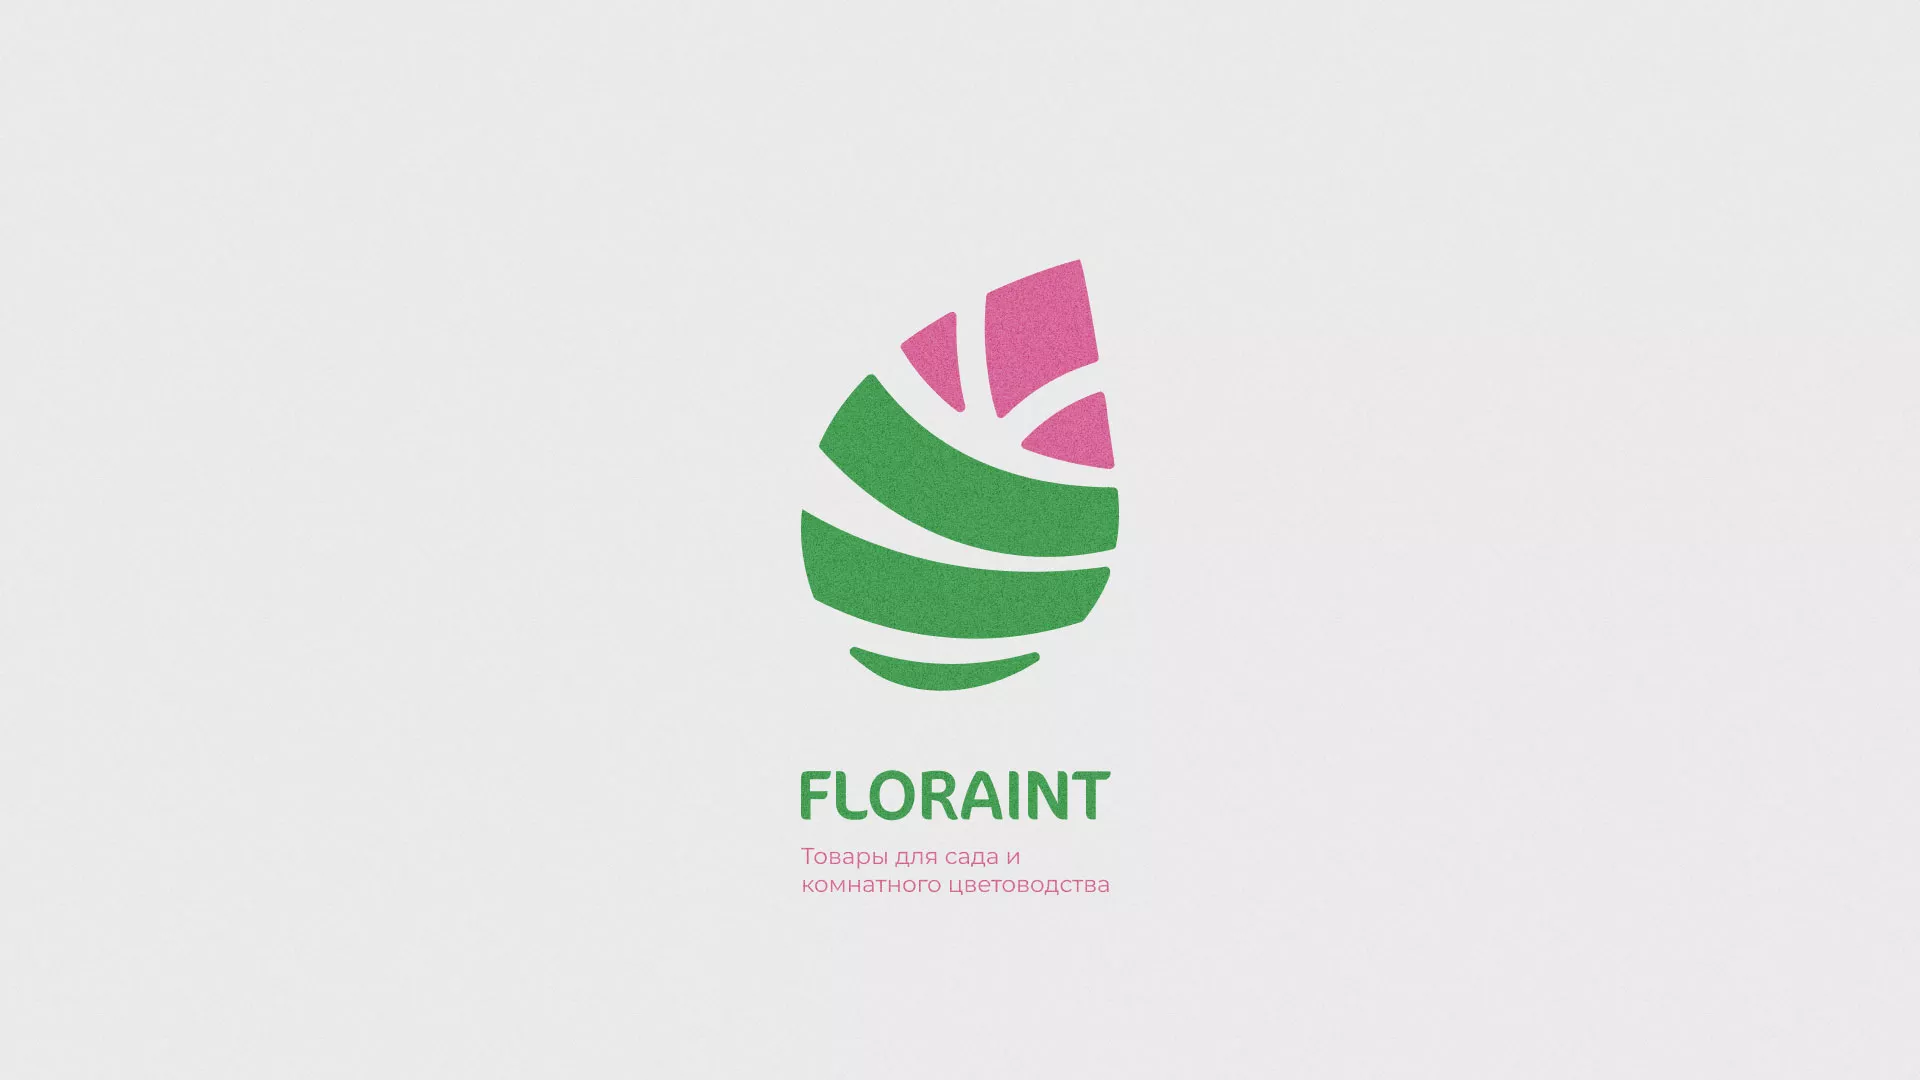 Разработка оформления профиля Instagram для магазина «Floraint» в Юбилейном